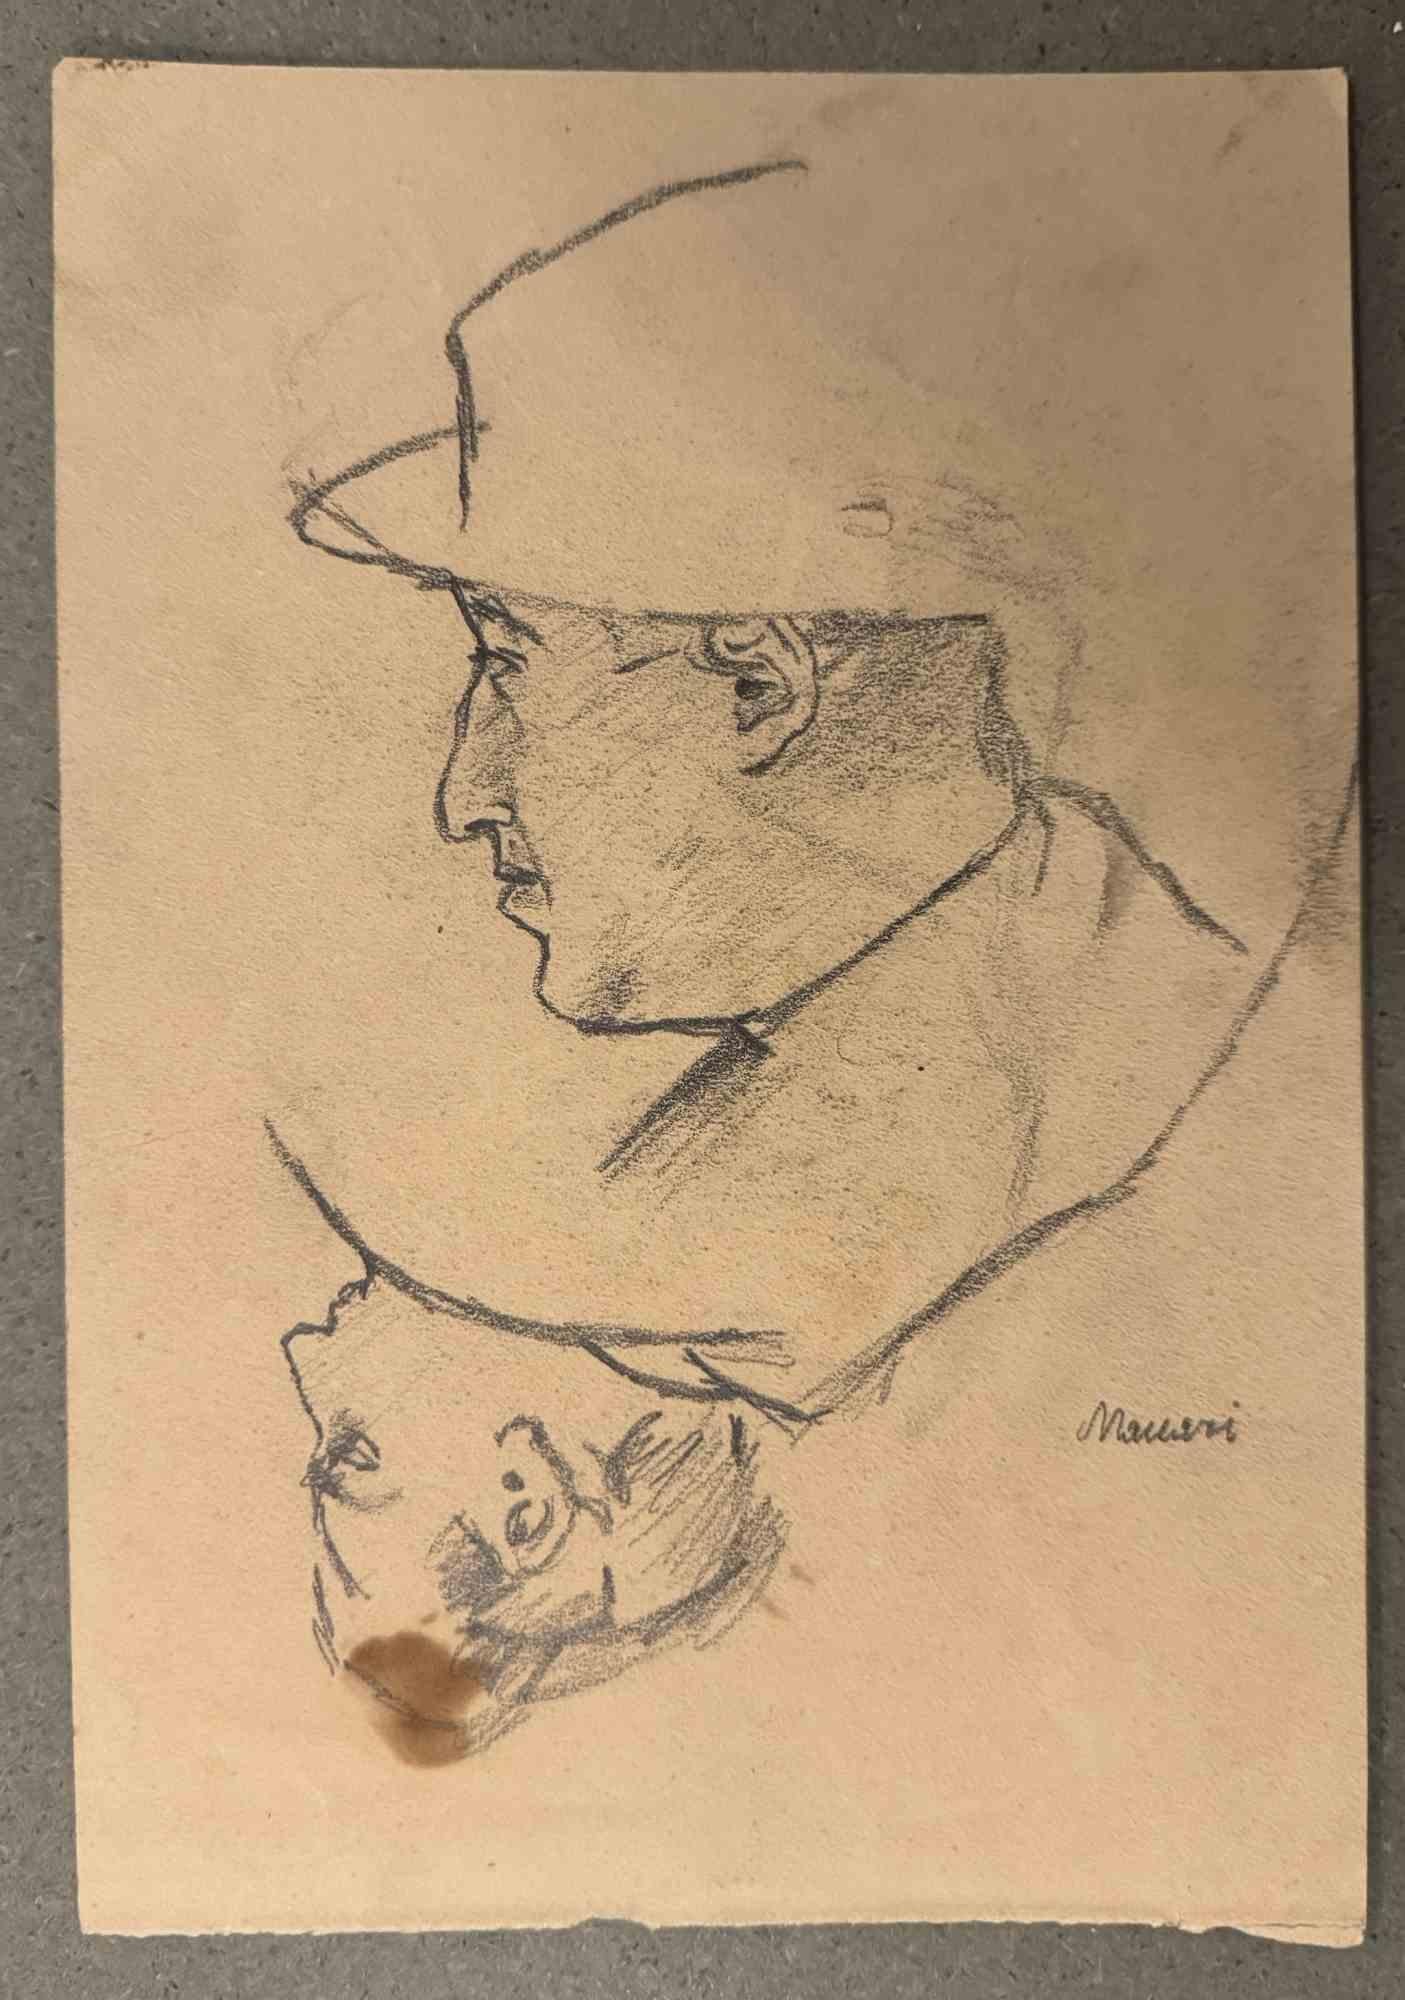 Portraits ist eine Kohlezeichnung von Mino Maccari (1924-1989) aus der Mitte des 20. Jahrhunderts.

Handsigniert.

Guter Zustand mit leichten Stockflecken.

Mino Maccari (Siena, 1924-Rom, 16. Juni 1989) war ein italienischer Schriftsteller, Maler,